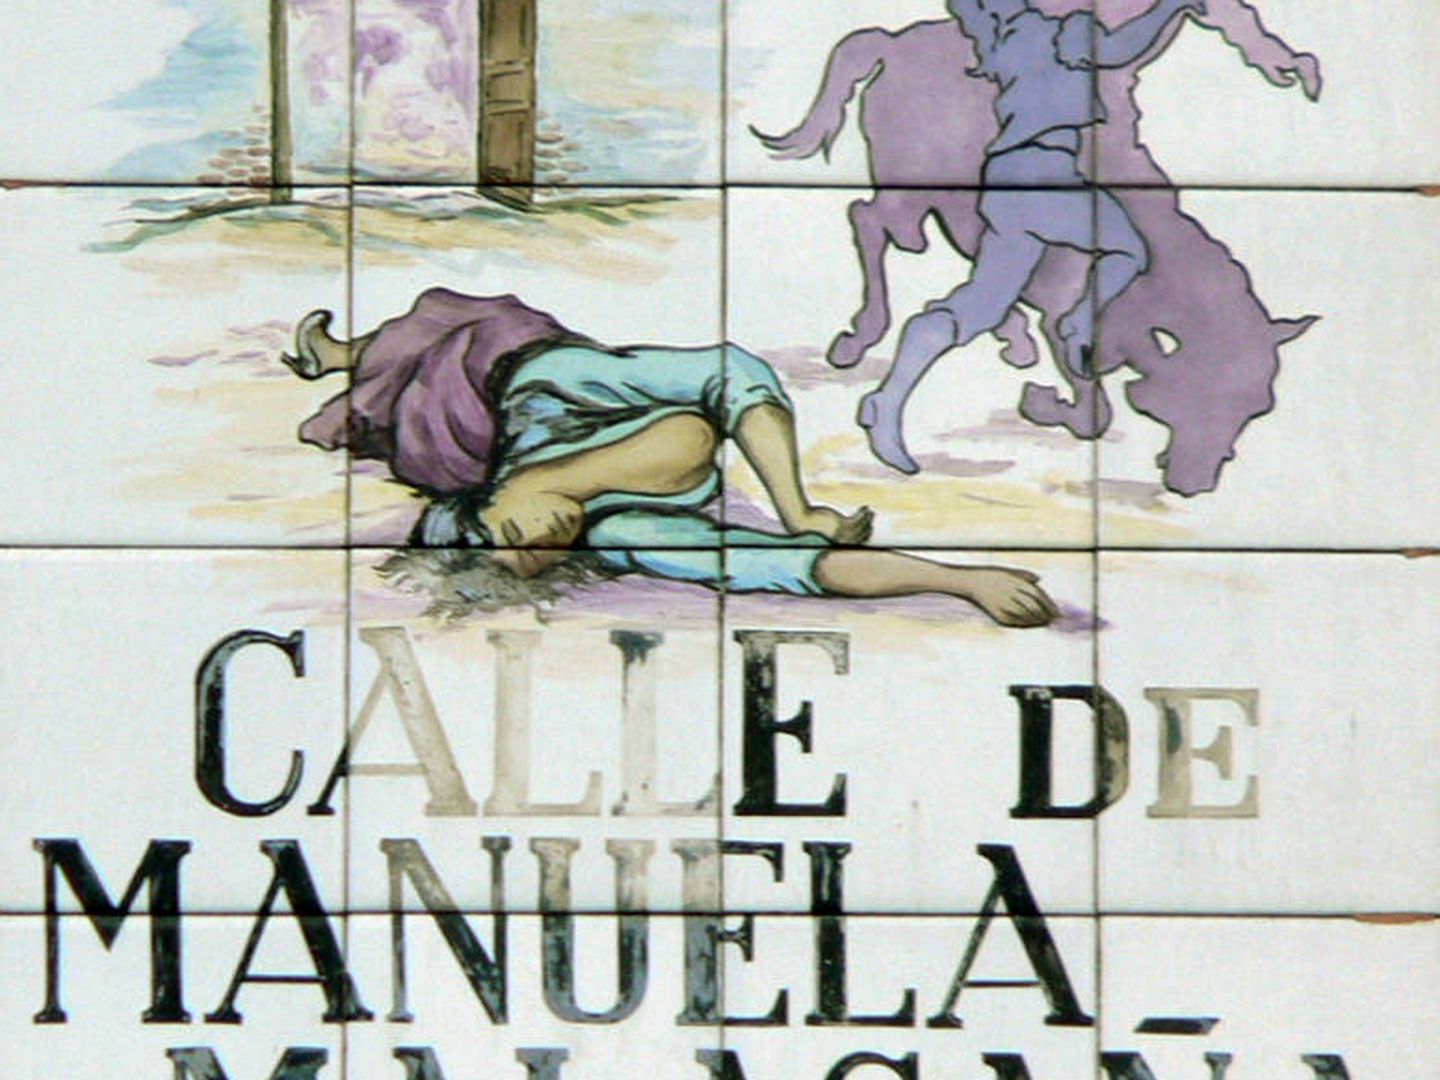 Placa con el nombre de la Calle de Manuela Malasaña, en Madrid. (Wikimedia Commons)